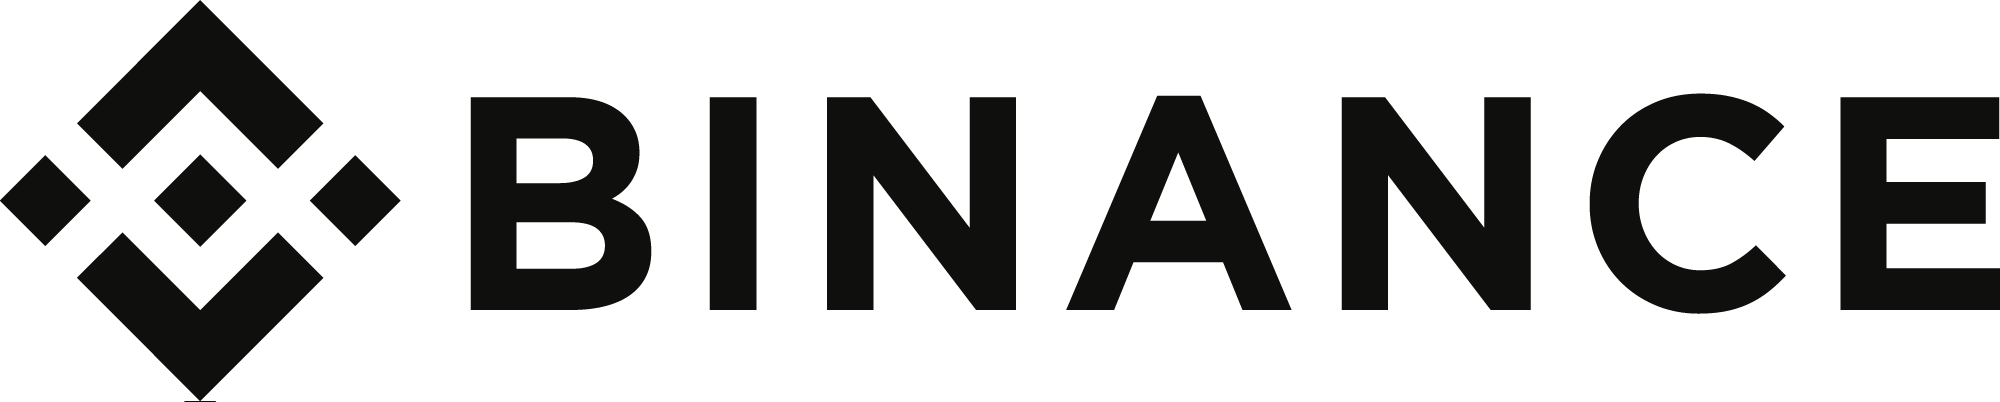 binance logo black